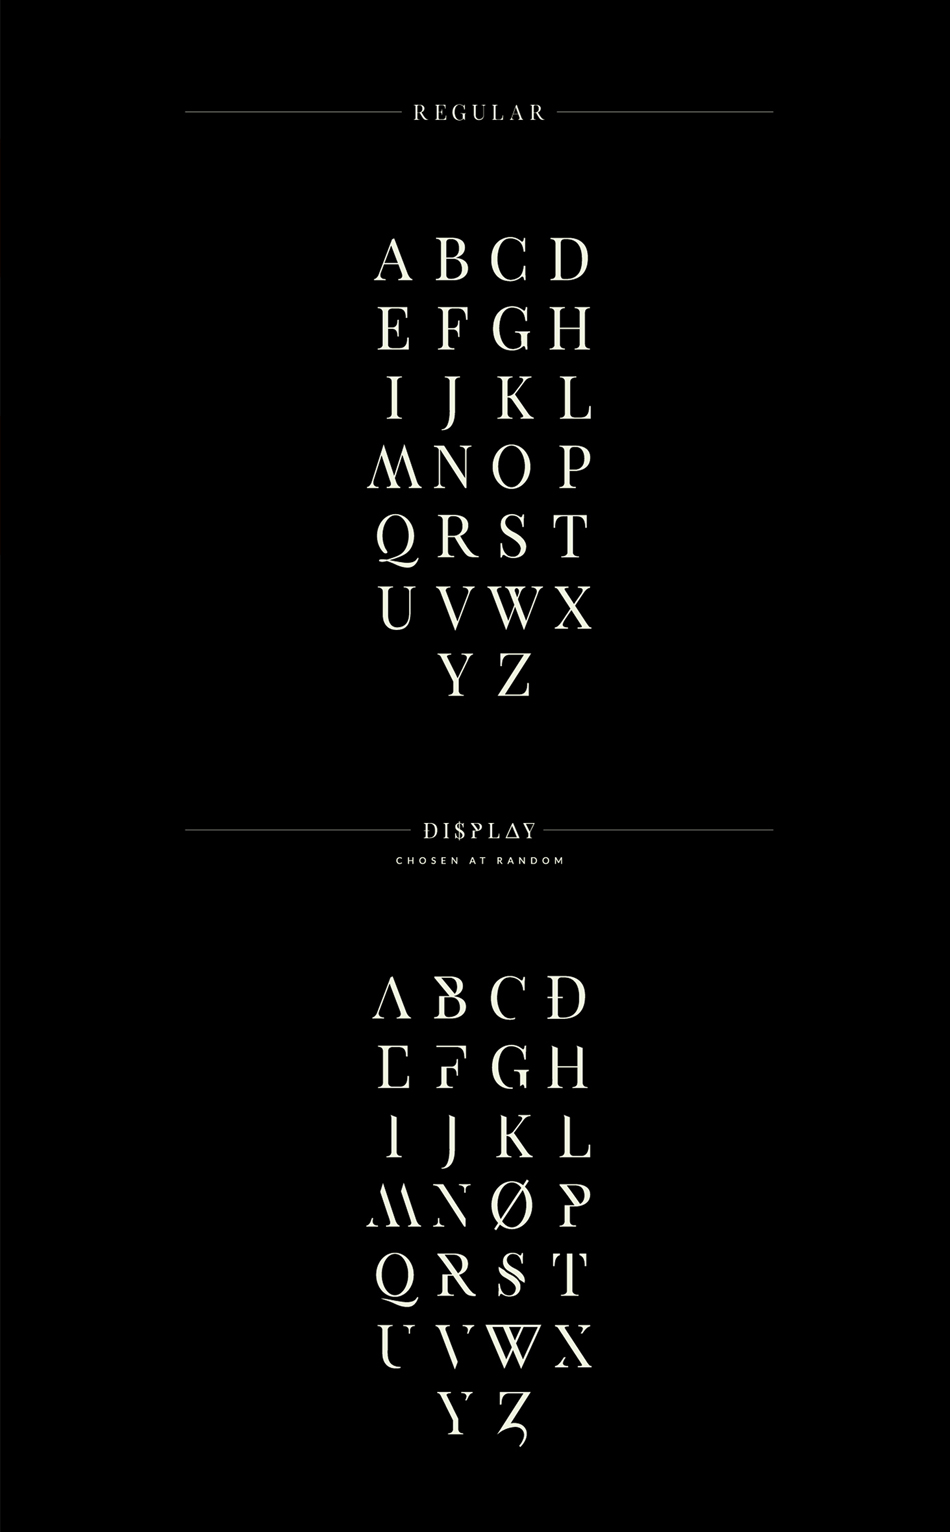 free-fonts